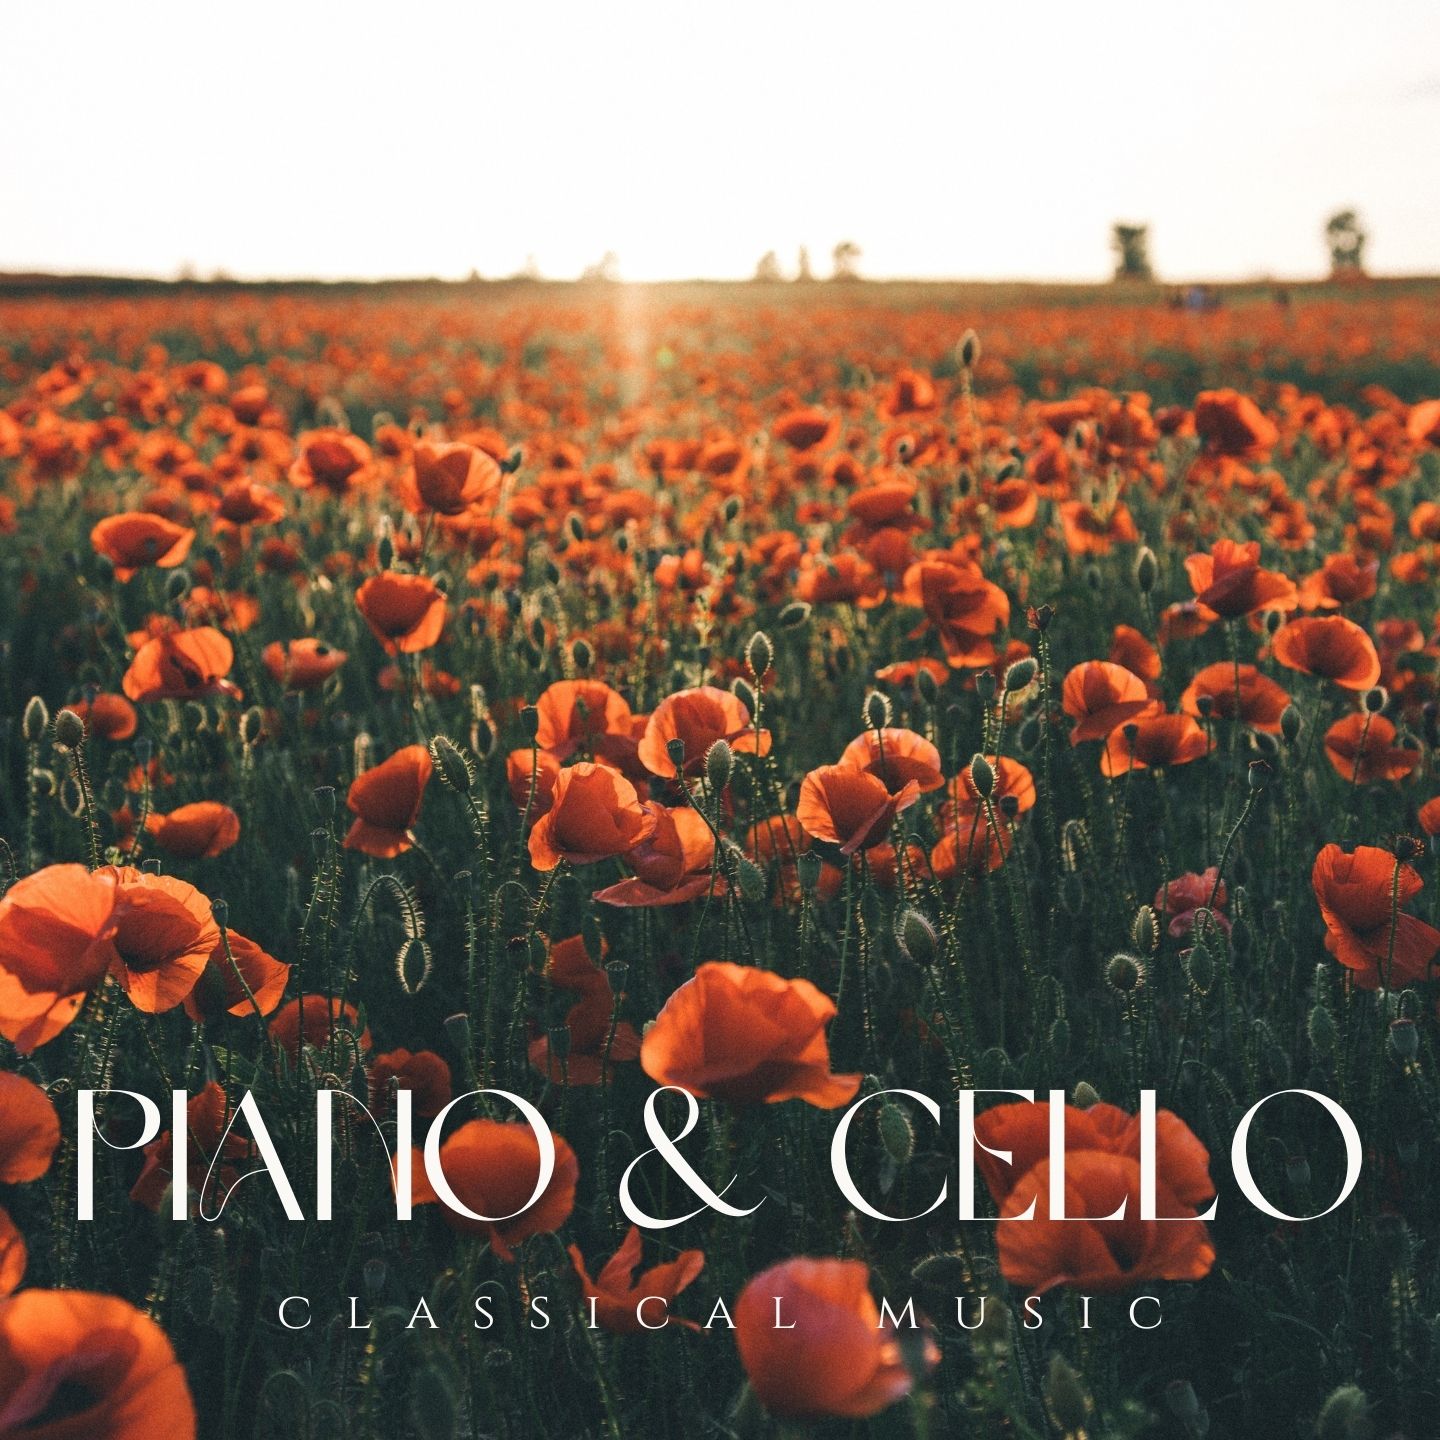 Piano & Cello - Classical Music